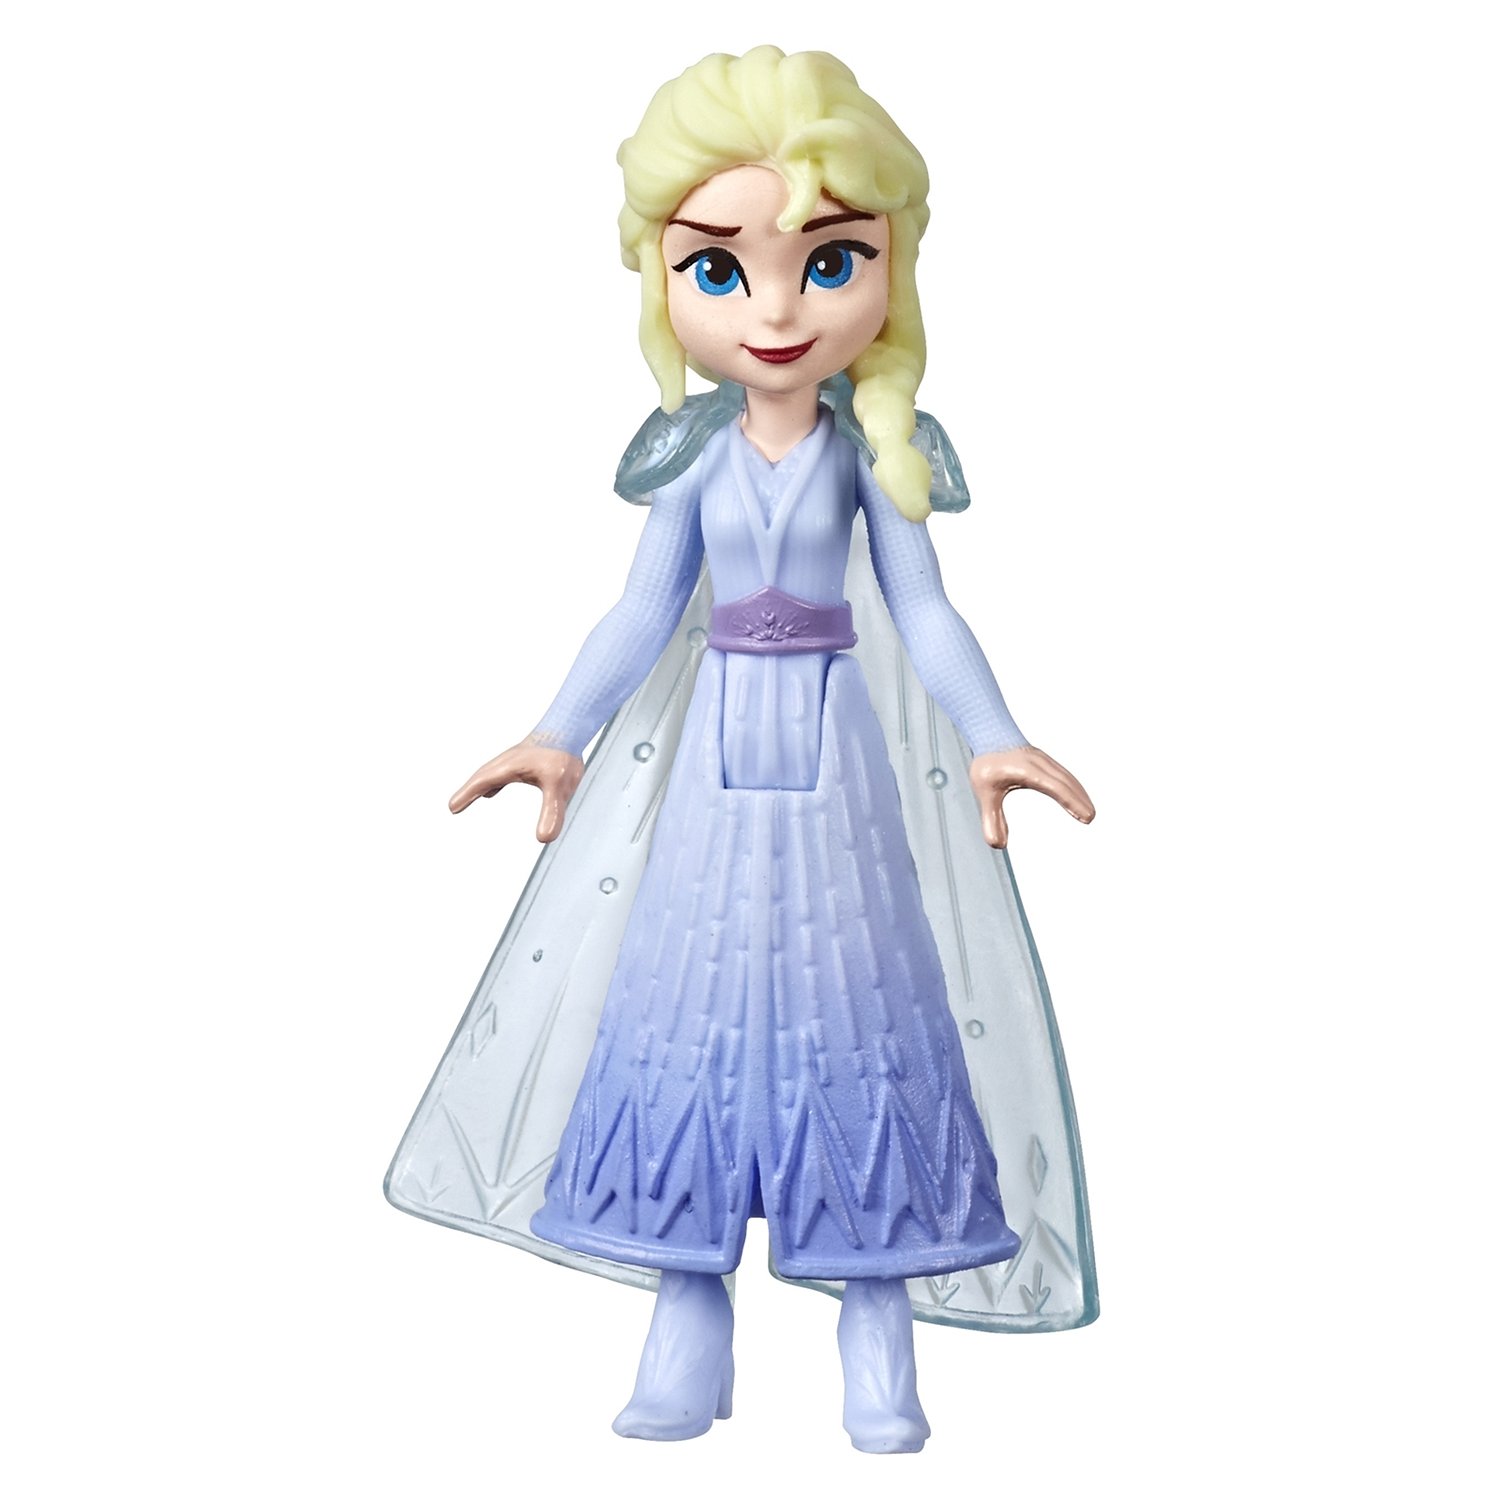 Мини-кукла Disney Princess Hasbro Frozen 2 (Холодное сердце 2) сюрприз, E7276EU4